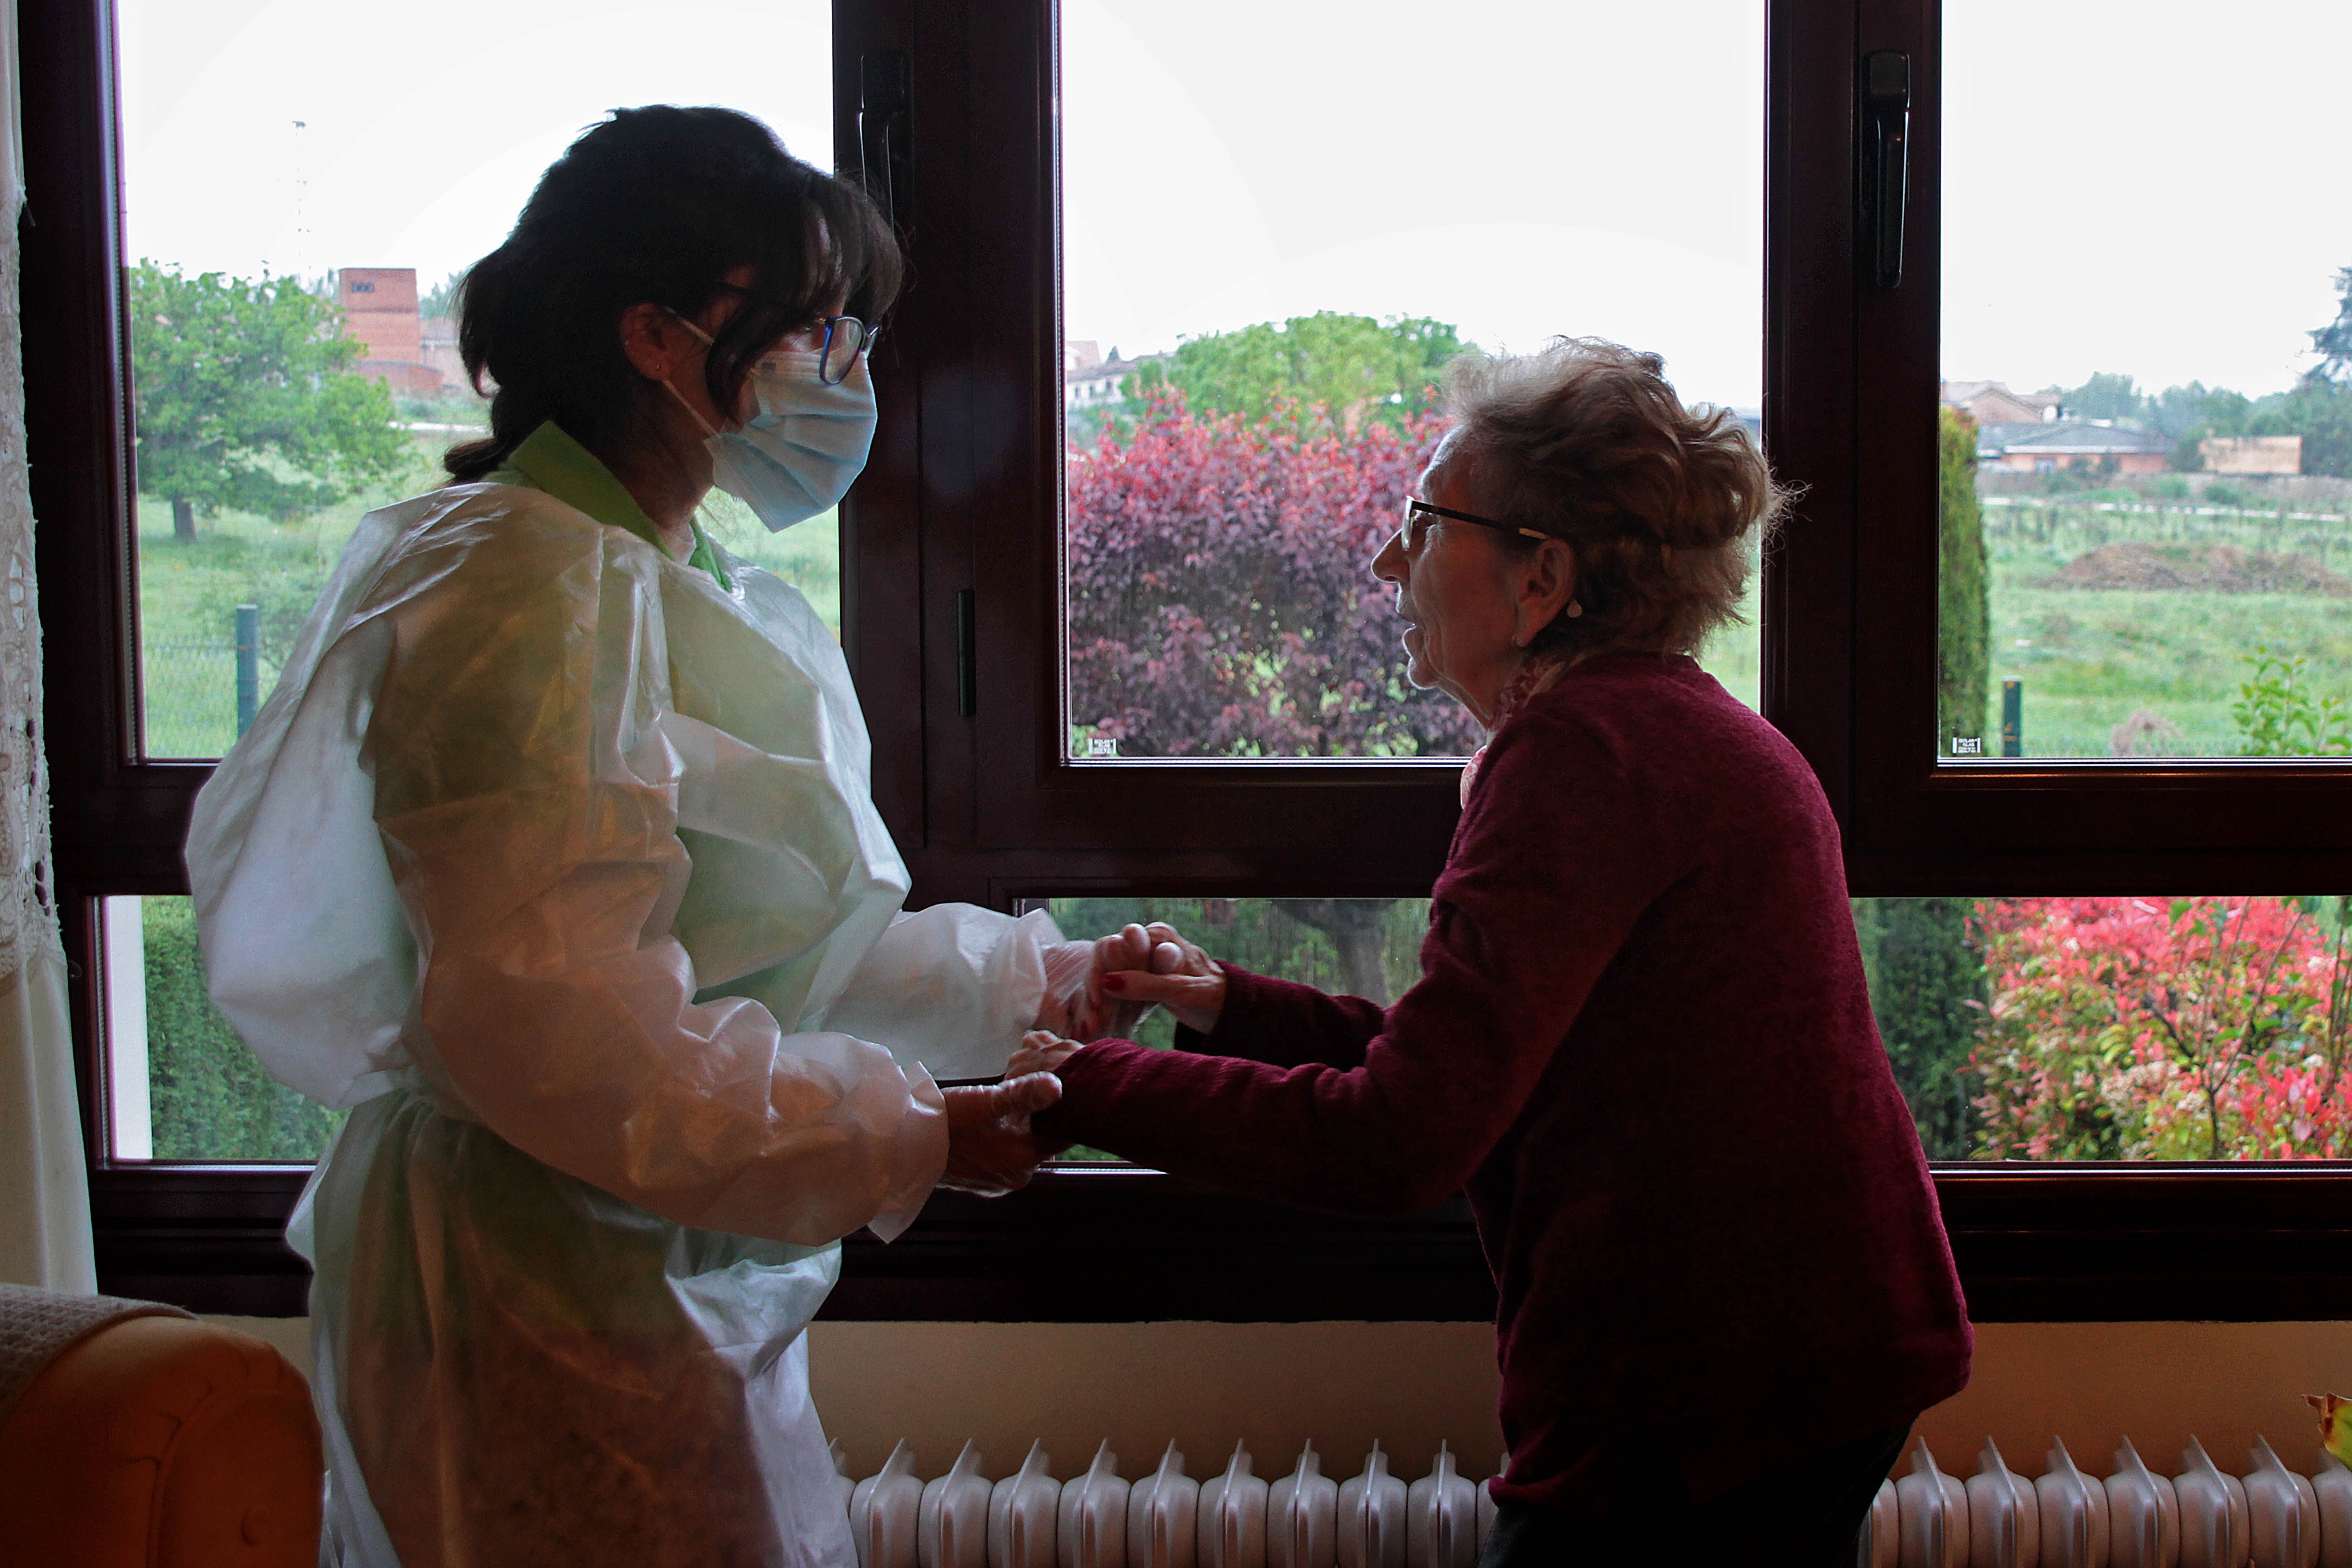 Una paciente con alzhéimer recibe apoyo domiciliario durante la pandemia. | PEIO GARCÍA (ICAL)